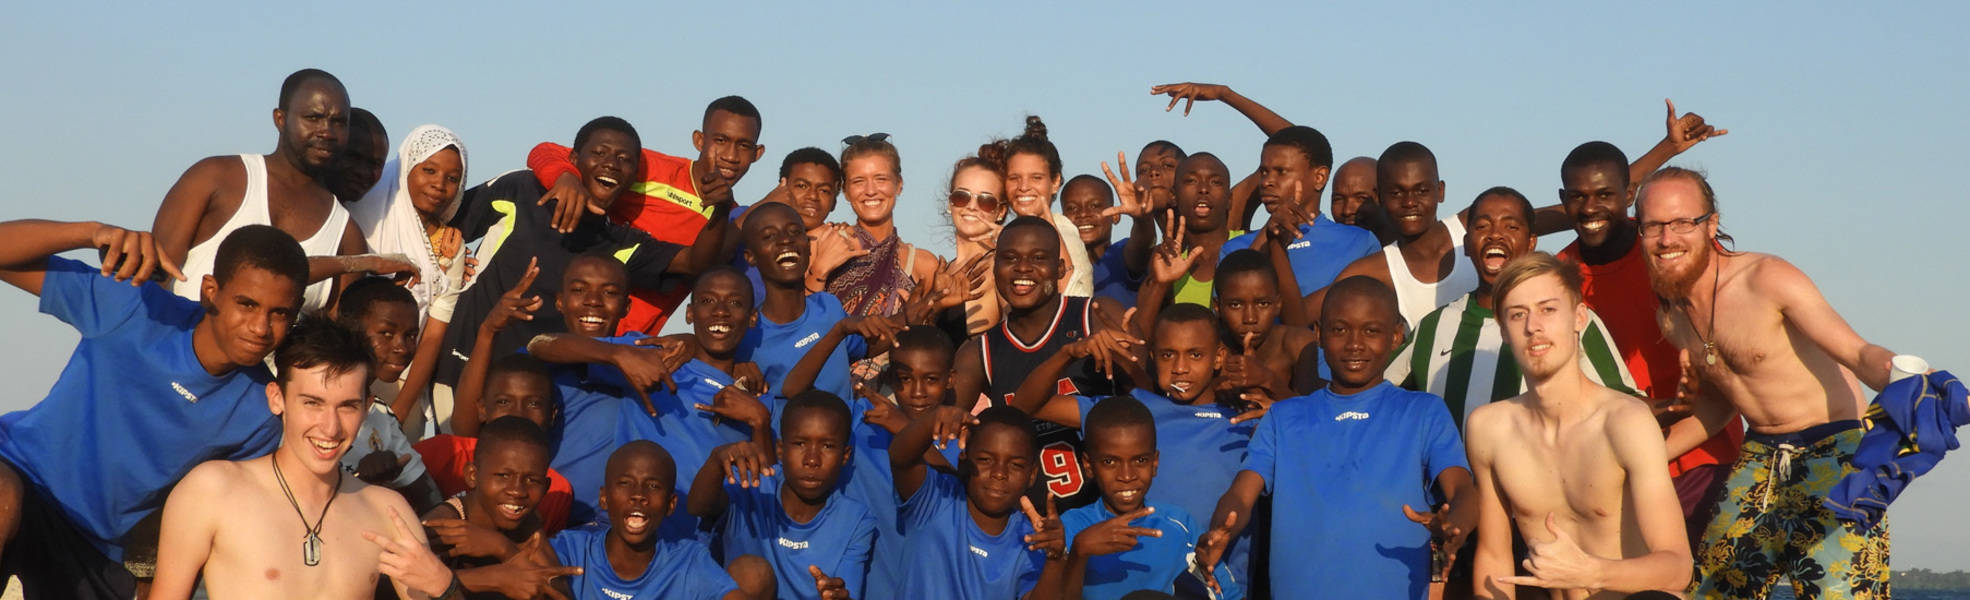 Freiwilligenarbeit als Fußballtrainer auf Sansibar